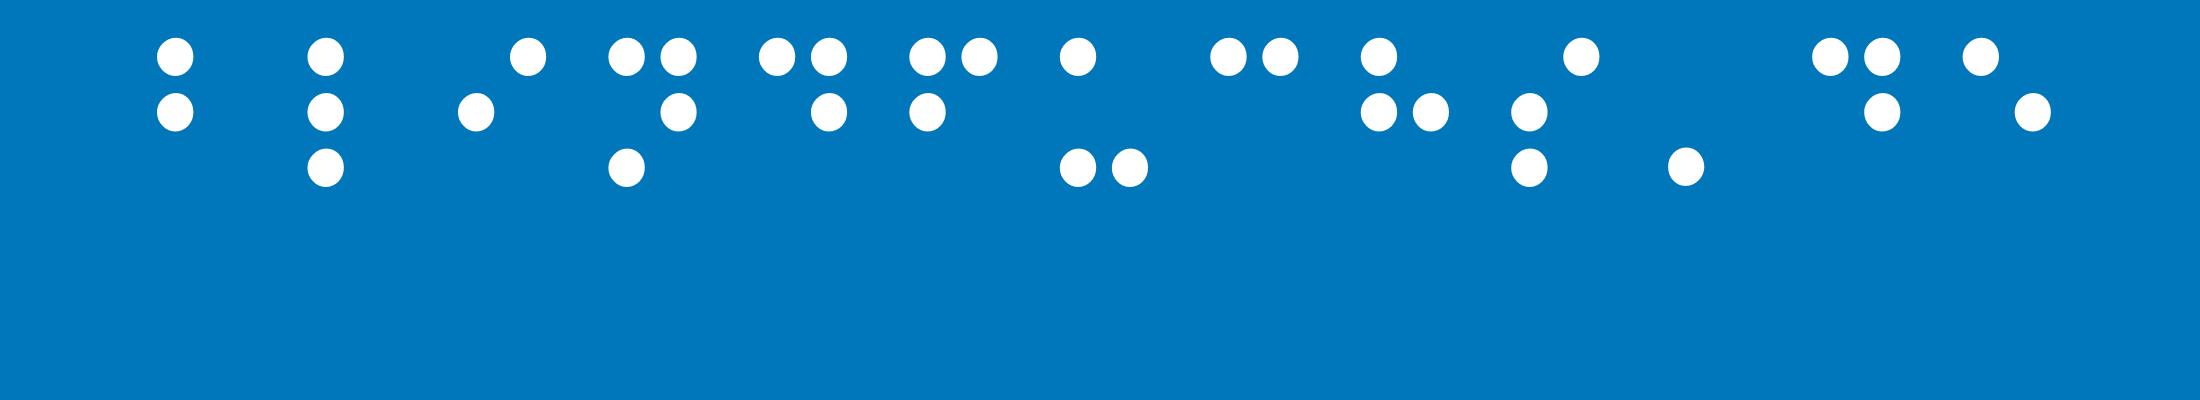 Blindfuchs.de Logo in Brailleschrift